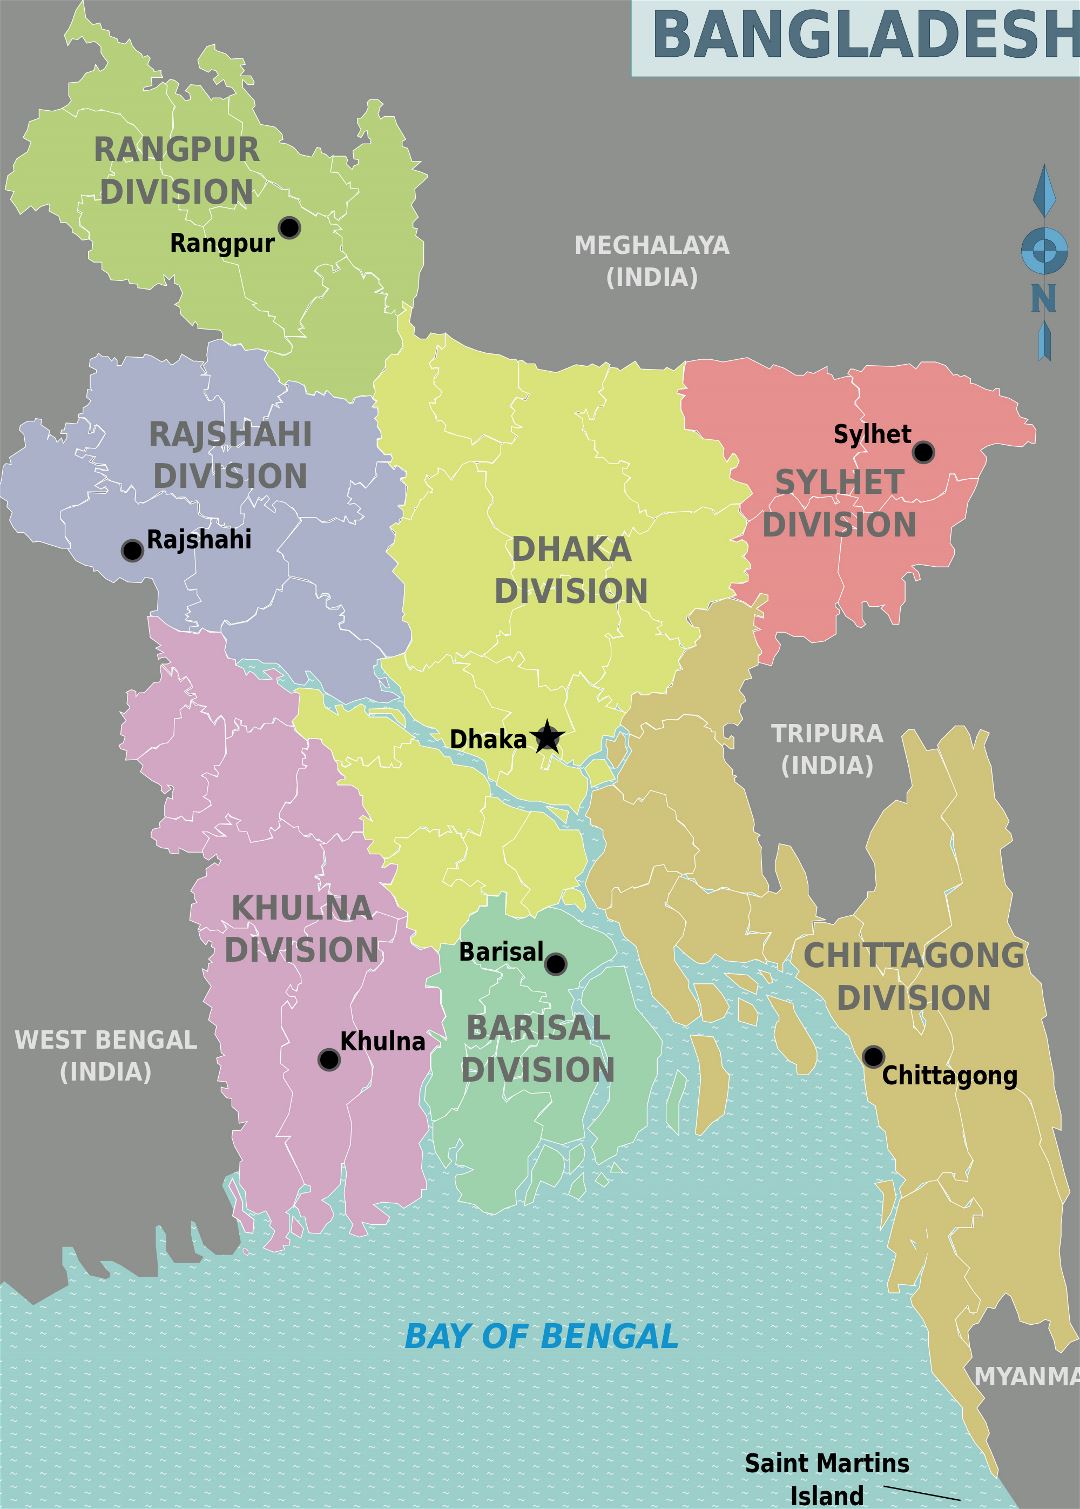 Grande detallado mapa de administrativas divisiones de Bangladesh